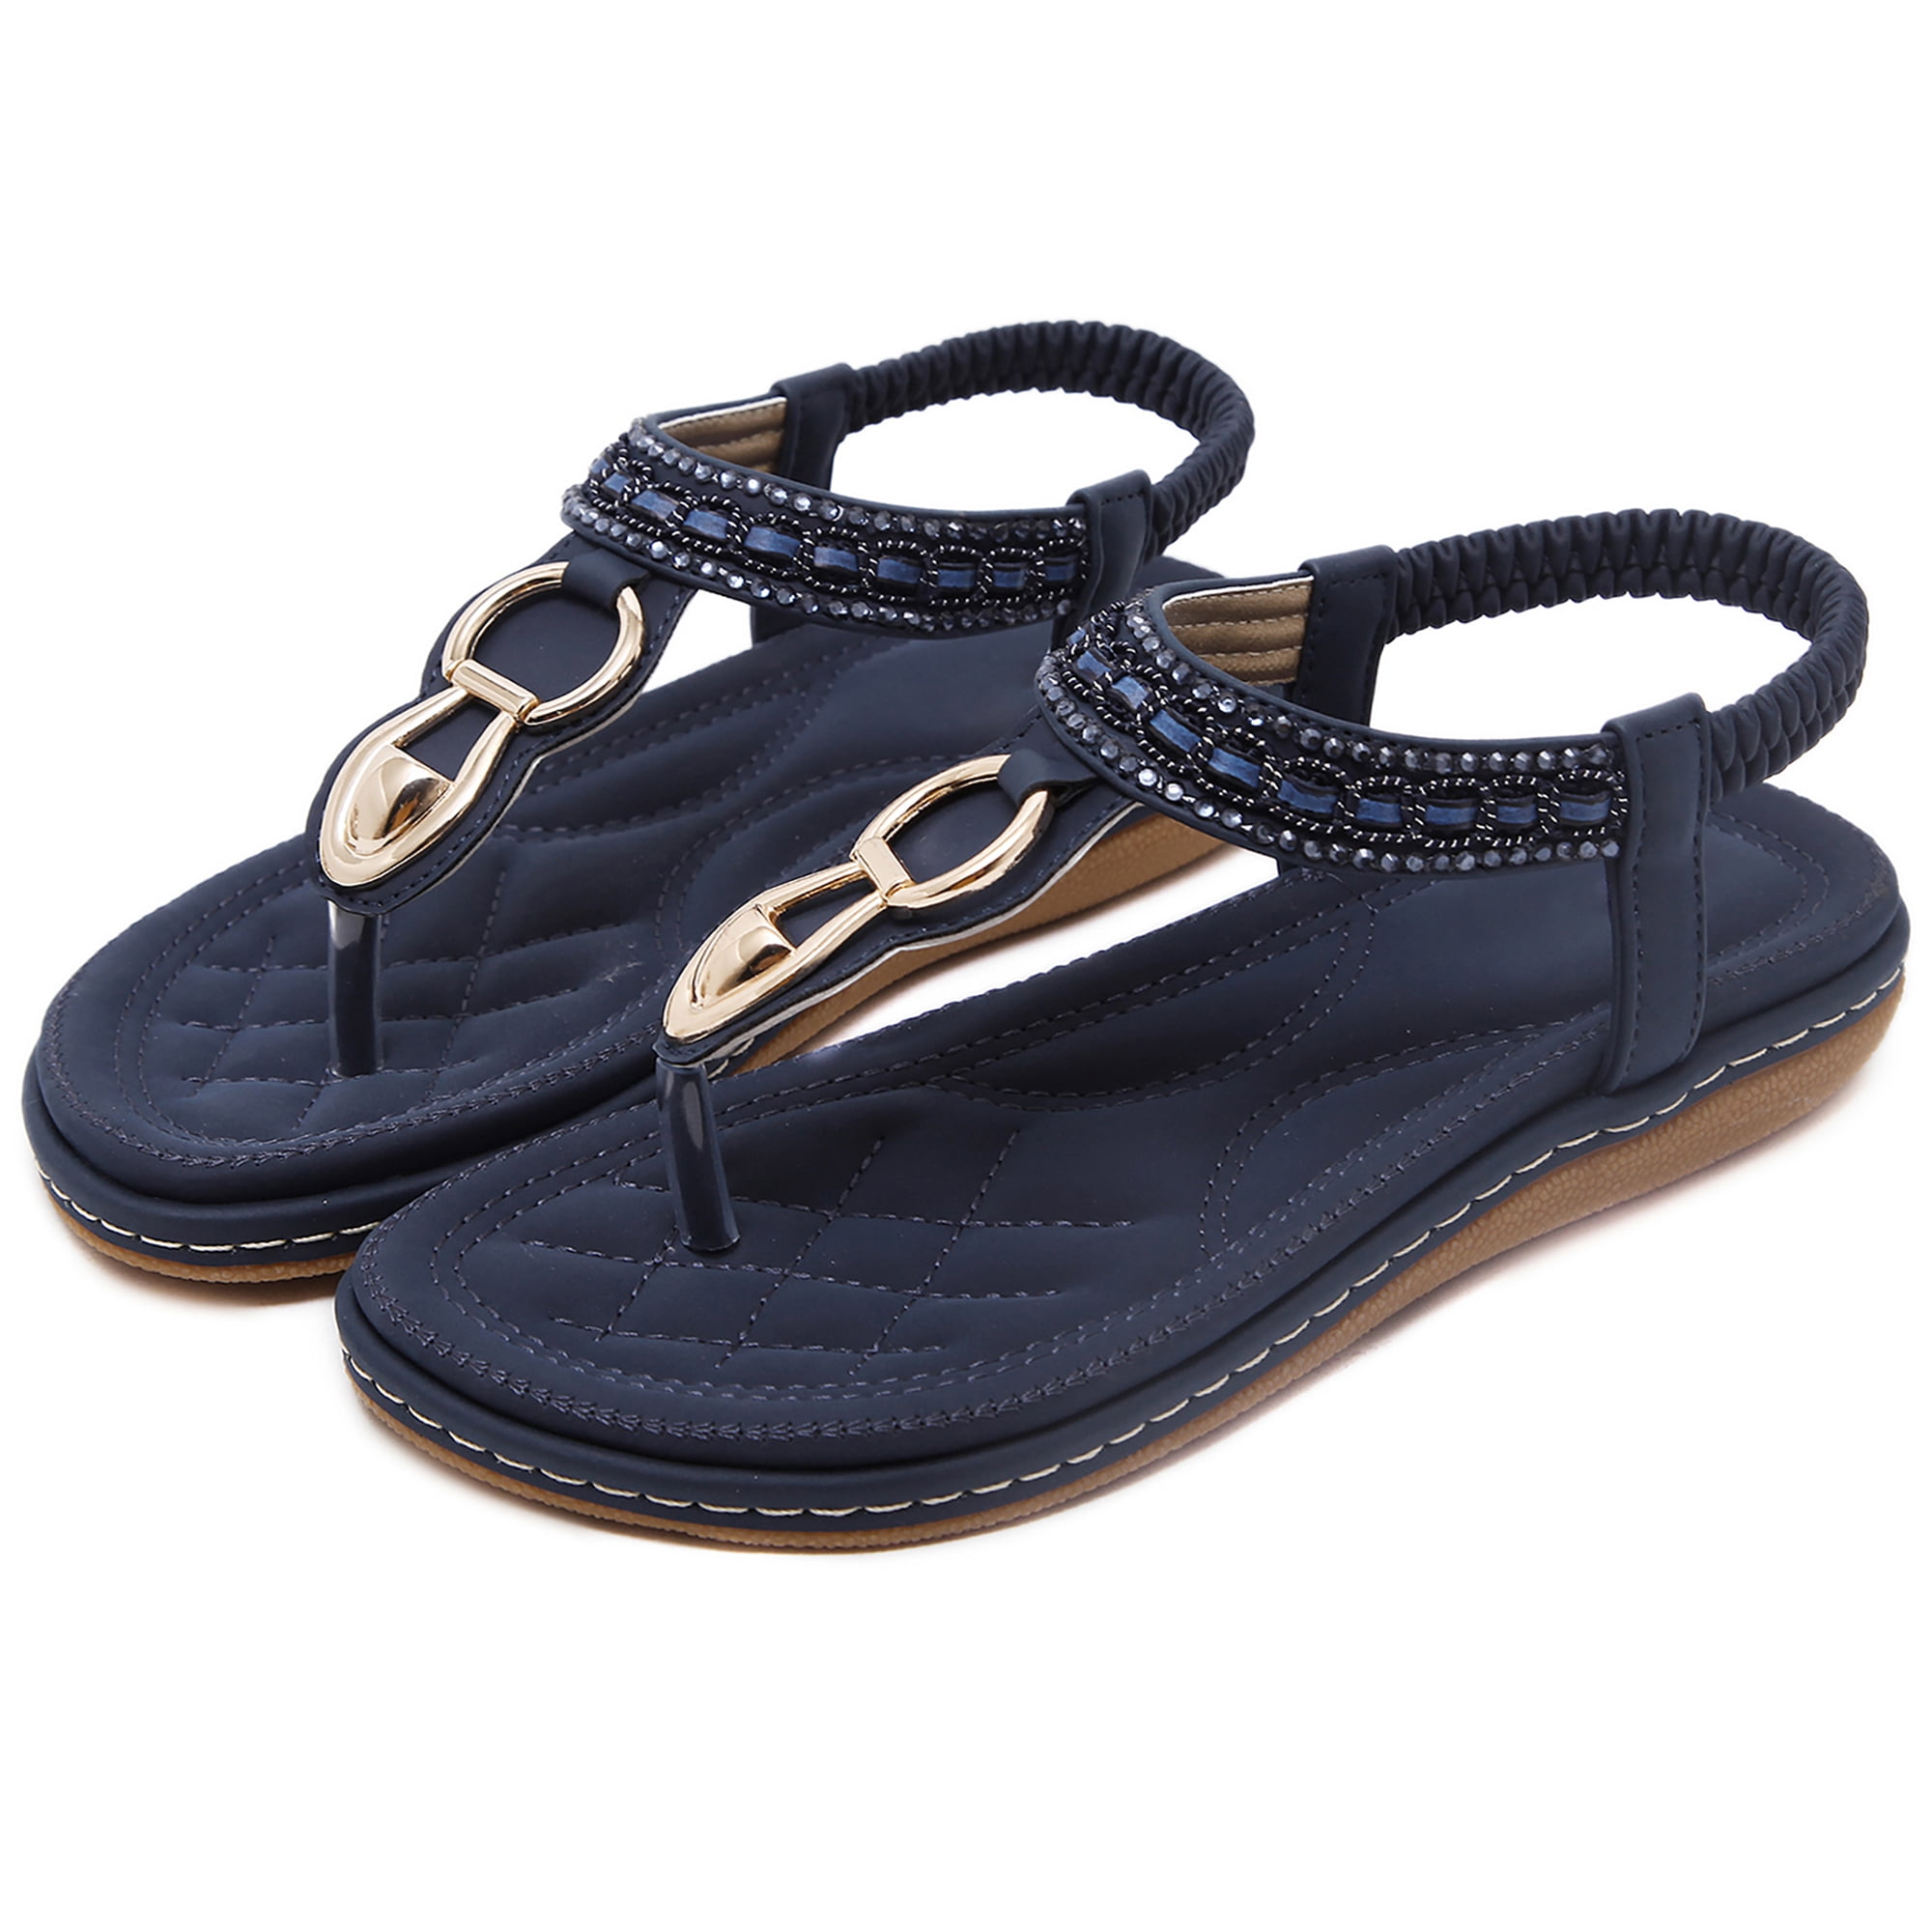 Bonbon leather flat sandals, navy blue, Les Tropeziennes Par M Belarbi | La  Redoute